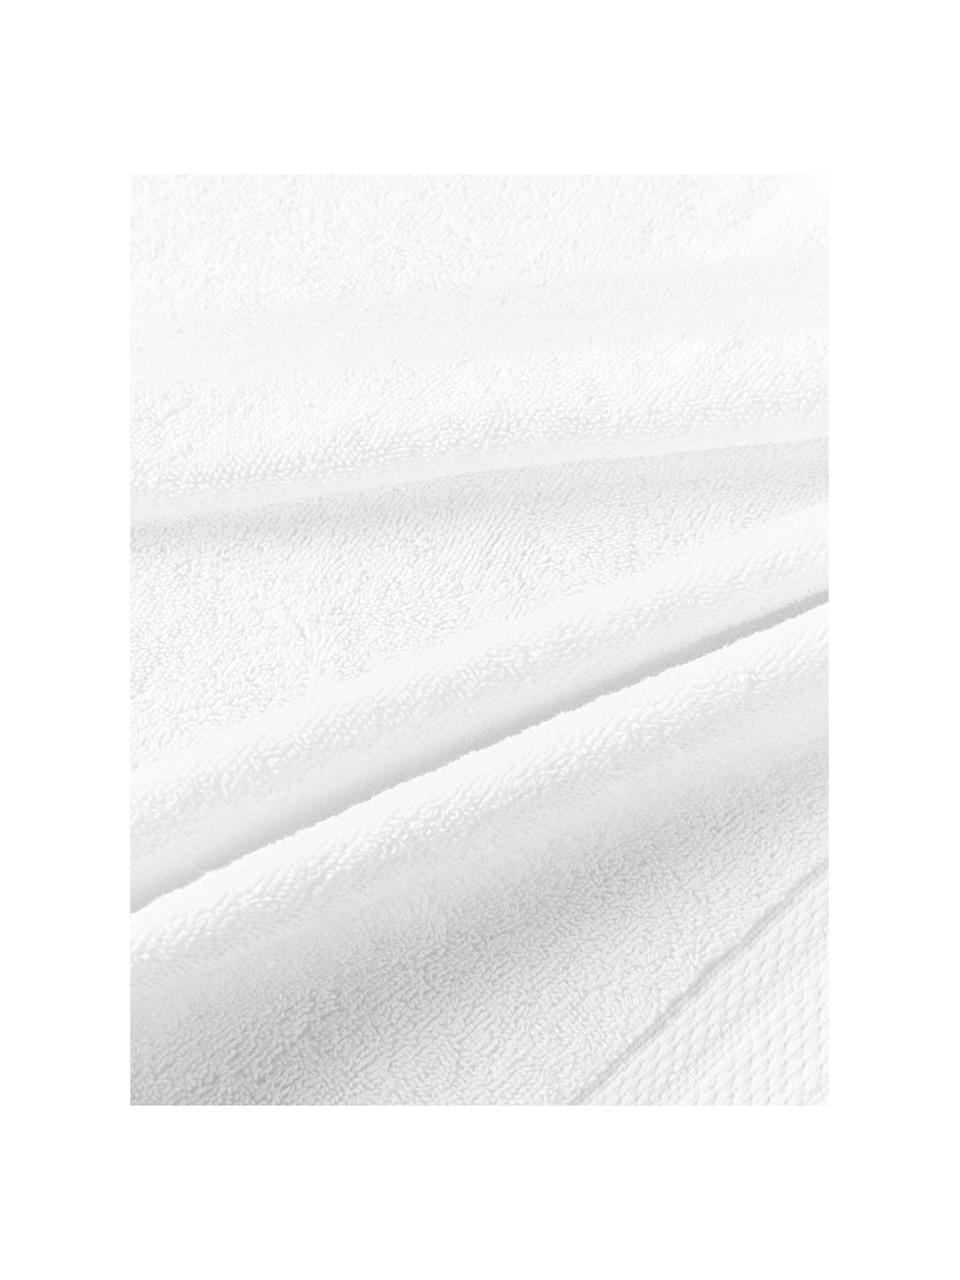 Lot de serviettes de bain en coton bio Premium, tailles variées, Blanc, 4 éléments (2 serviettes de toilette et 2 draps de bain)